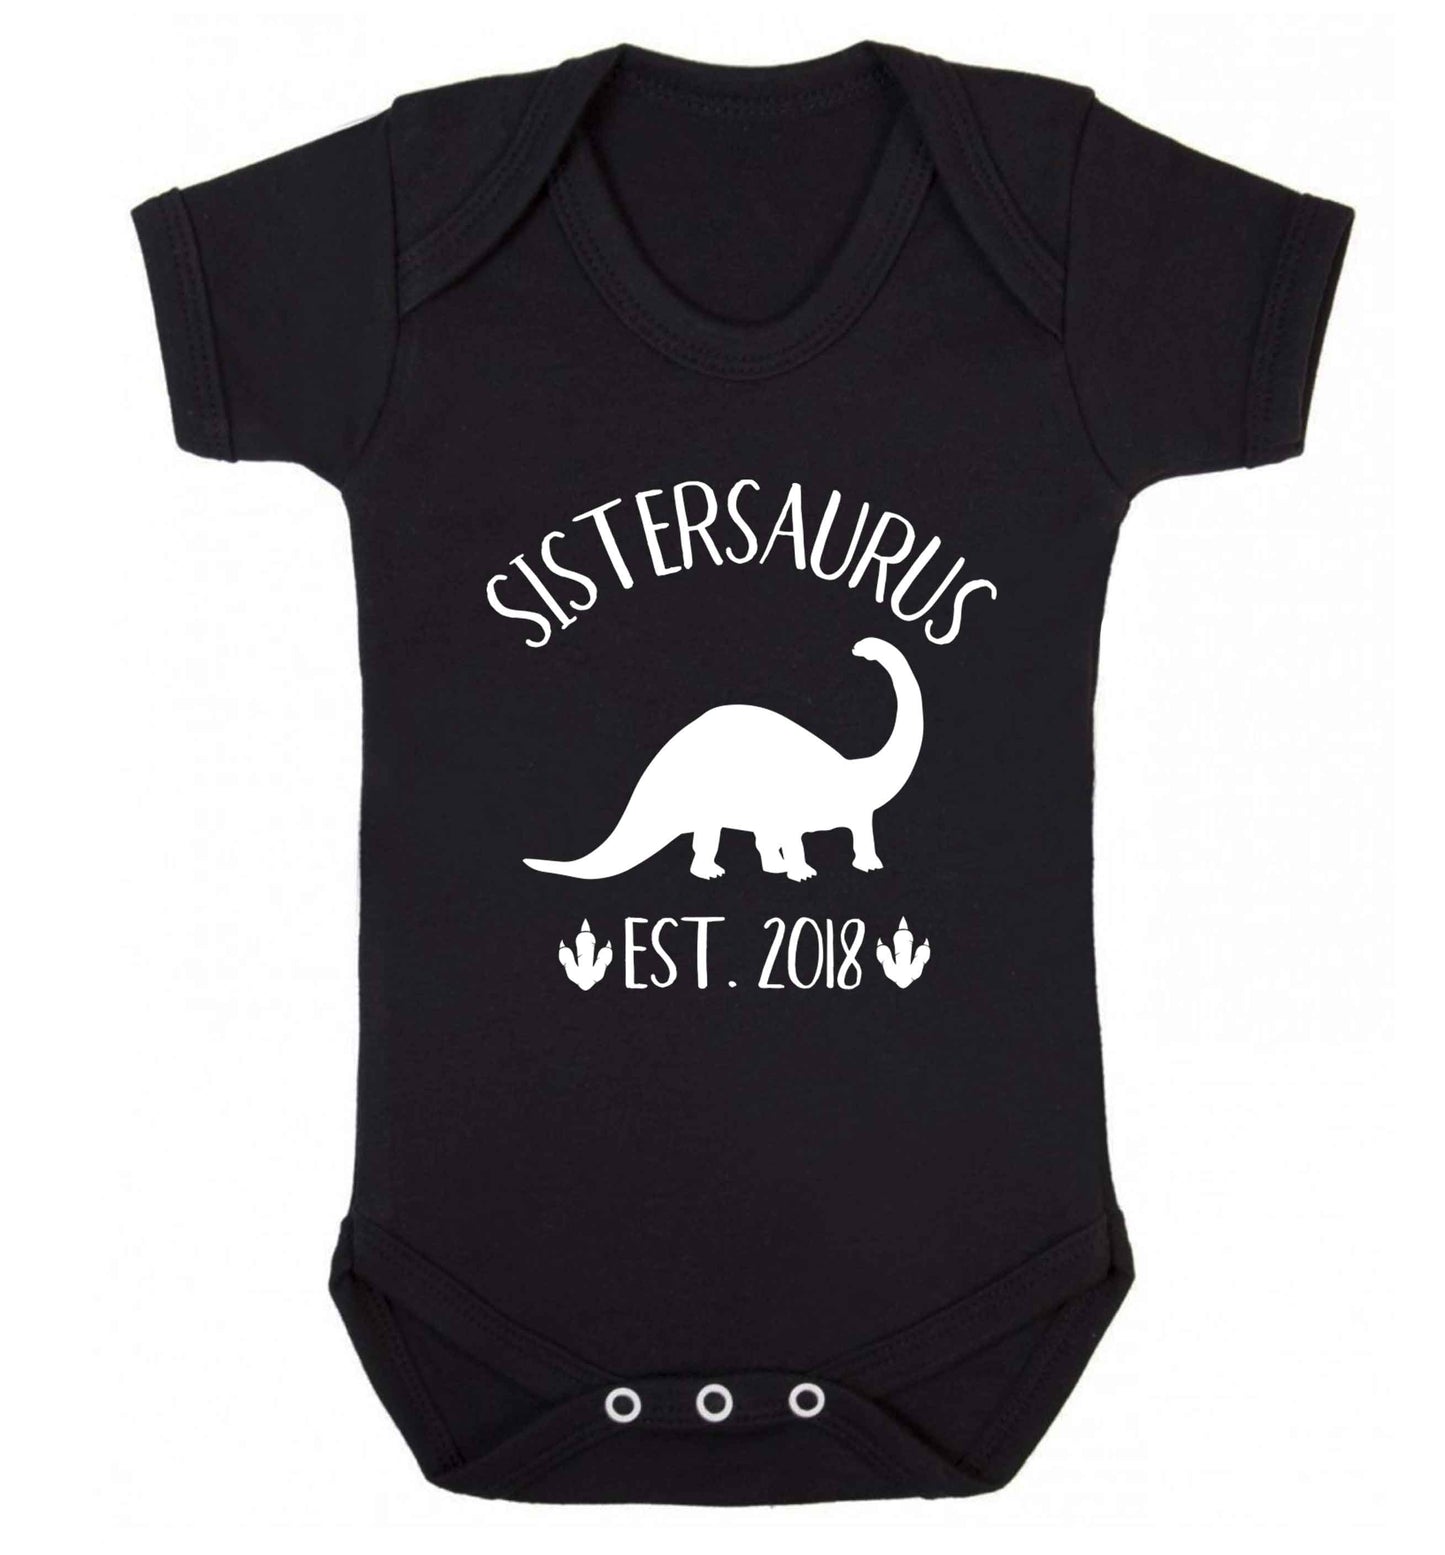 Personalised sistersaurus since (custom date) Baby Vest black 18-24 months